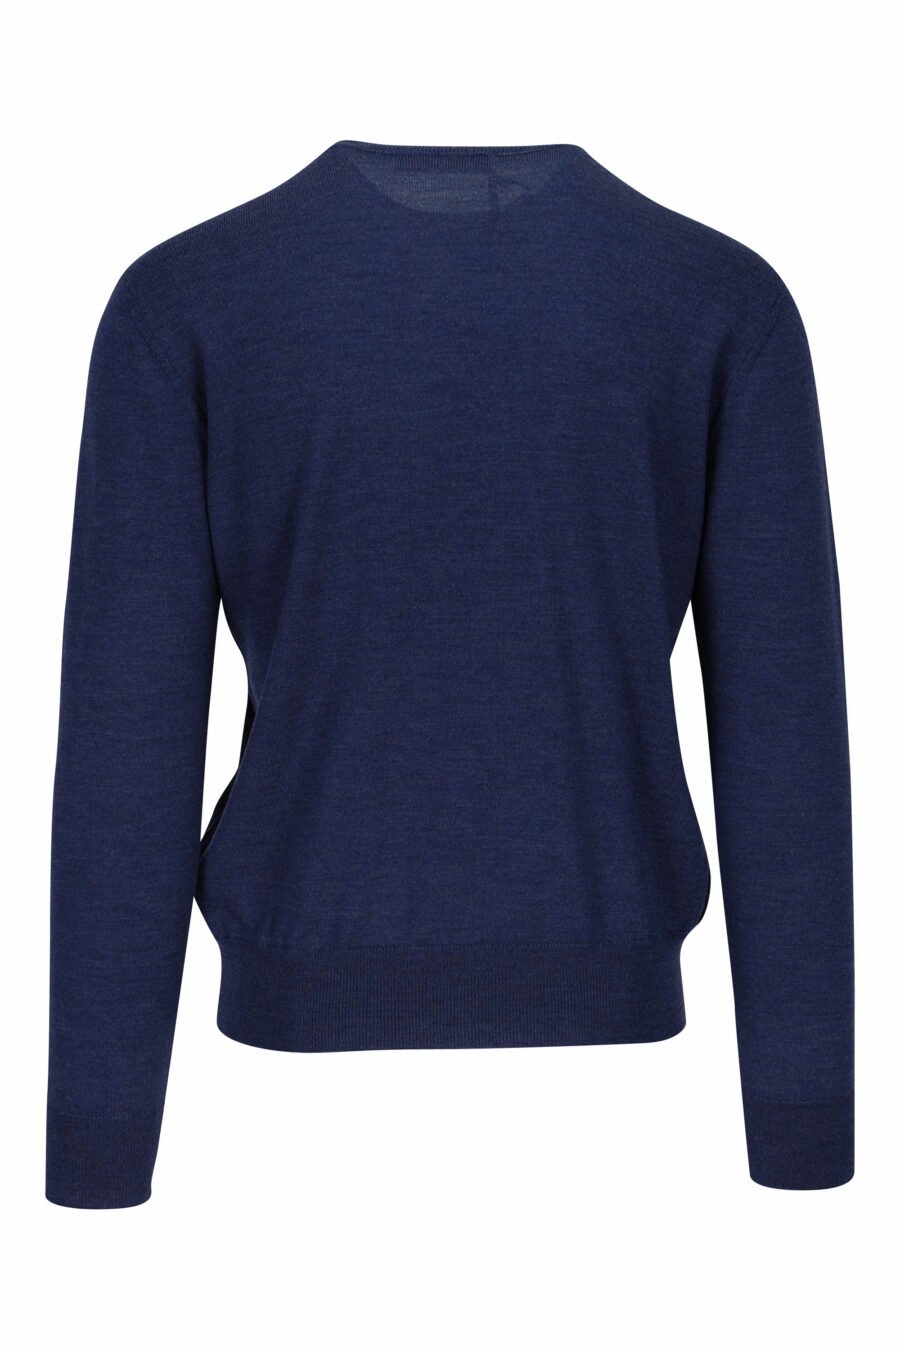 Blauer Pullover mit Mini-Logo "D2" auf dem Blatt - 8054148057985 1